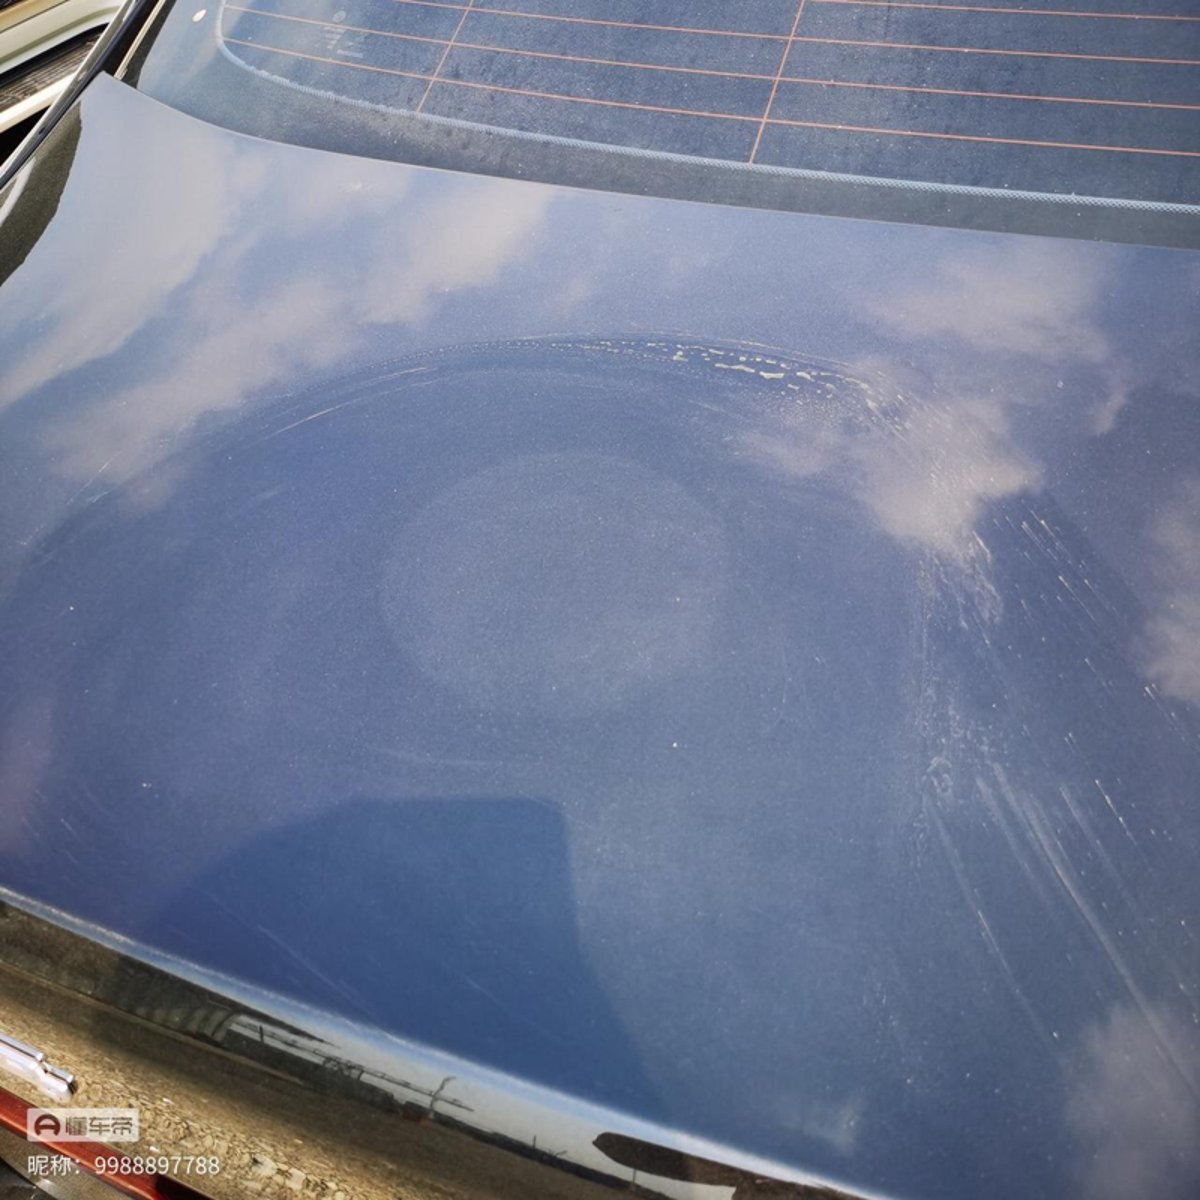 宝马5系 前引擎盖有下图这样的圈圈，用水一擦挺明显，是什么情况啊，怎么办，各位车友们。